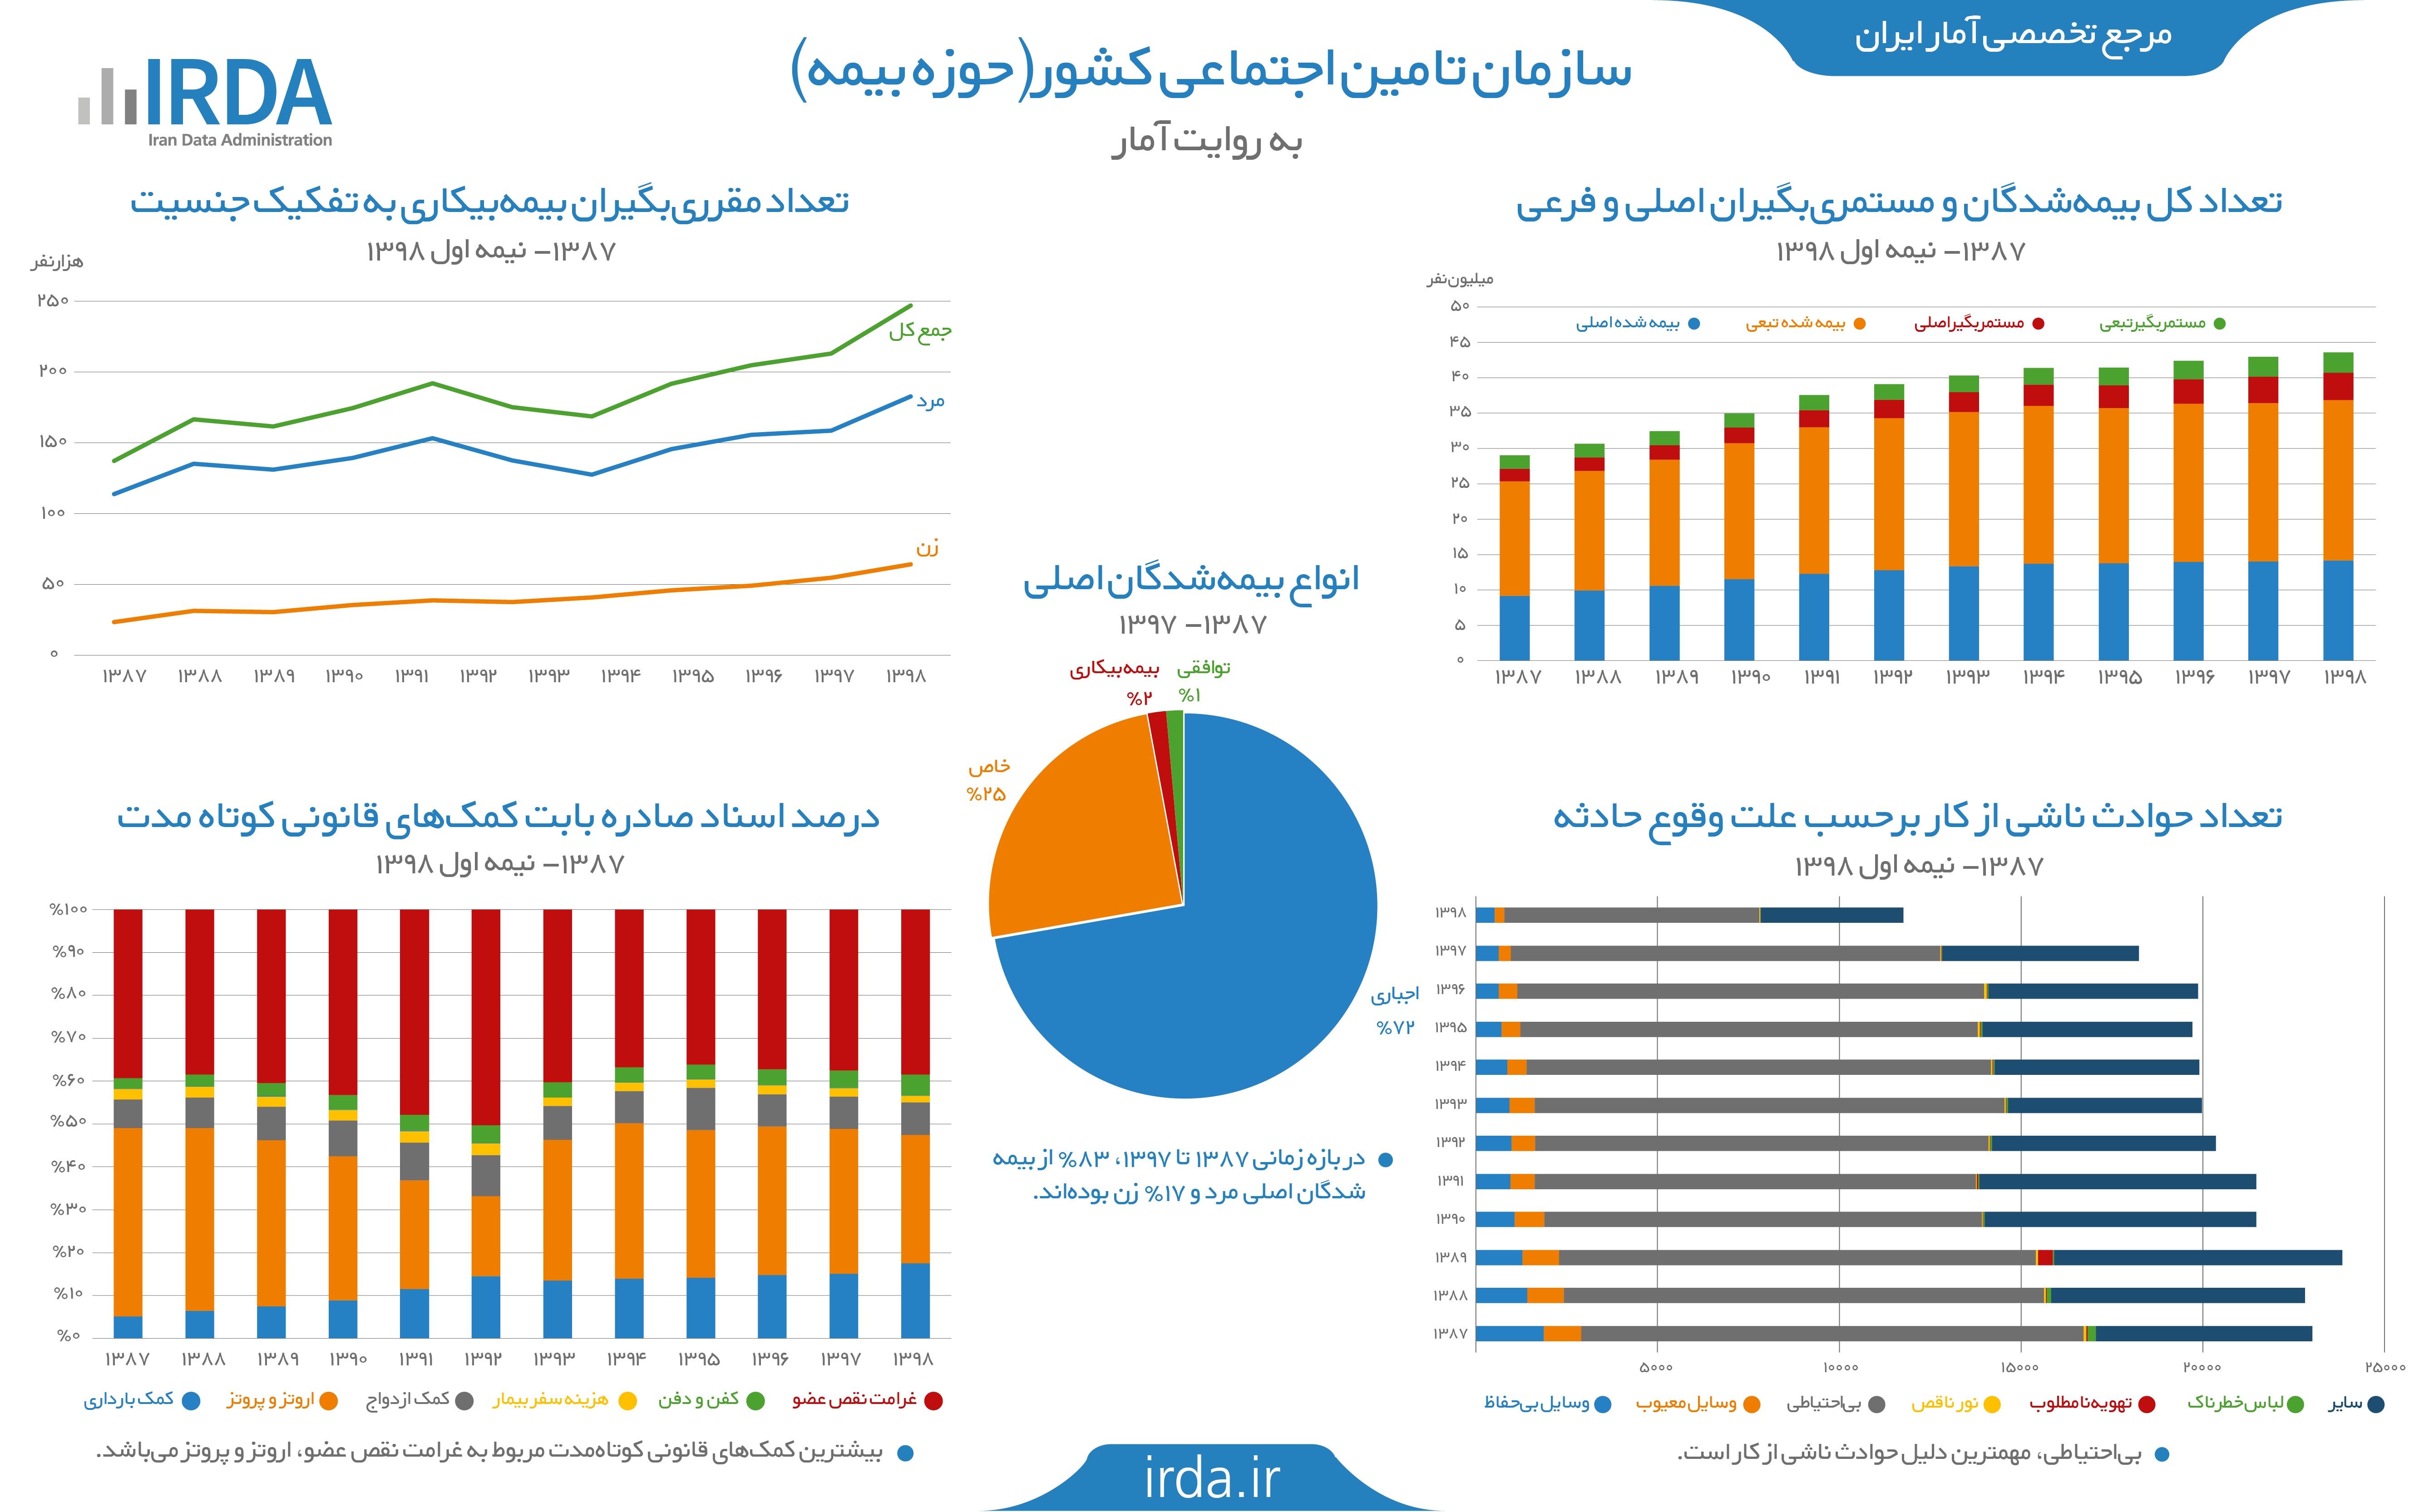 بیمه تأمین اجتماعی در ایران به روایت آمار (حوزه بیمه)